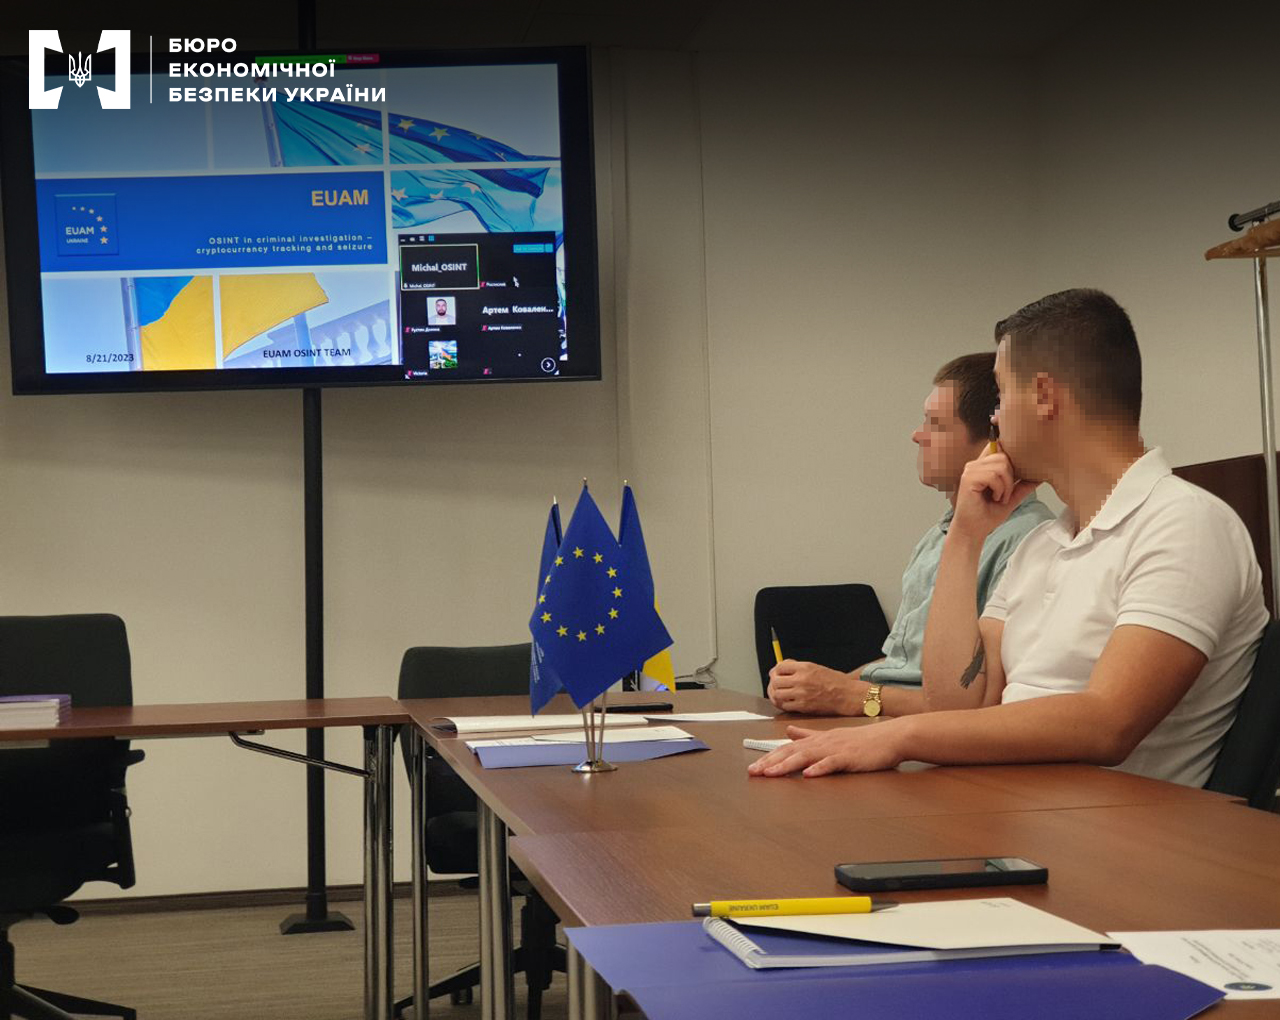 Funcionarios ucranianos en Lviv, Ucrania, asisten a una sesión de capacitación sobre criptomonedas organizada por funcionarios de la UE.